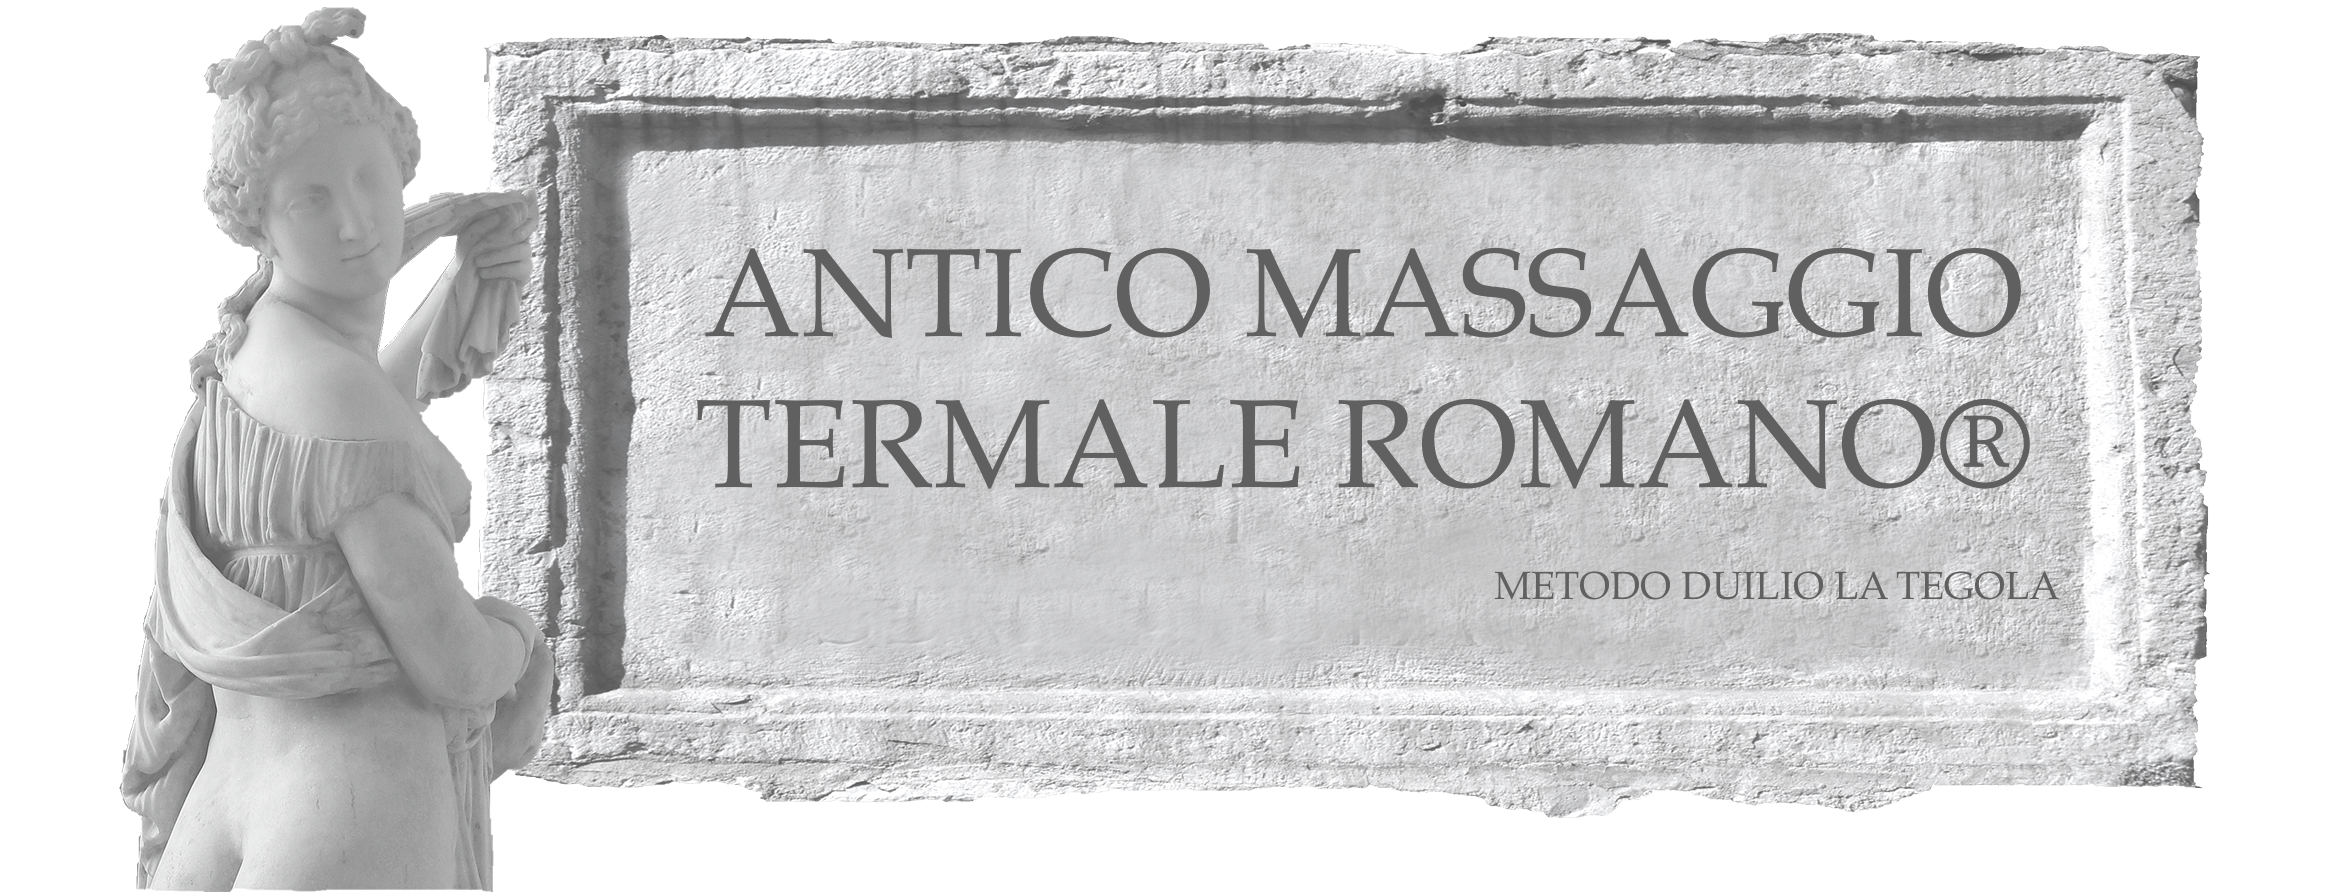 Antico Massaggio Termale Romano® logo